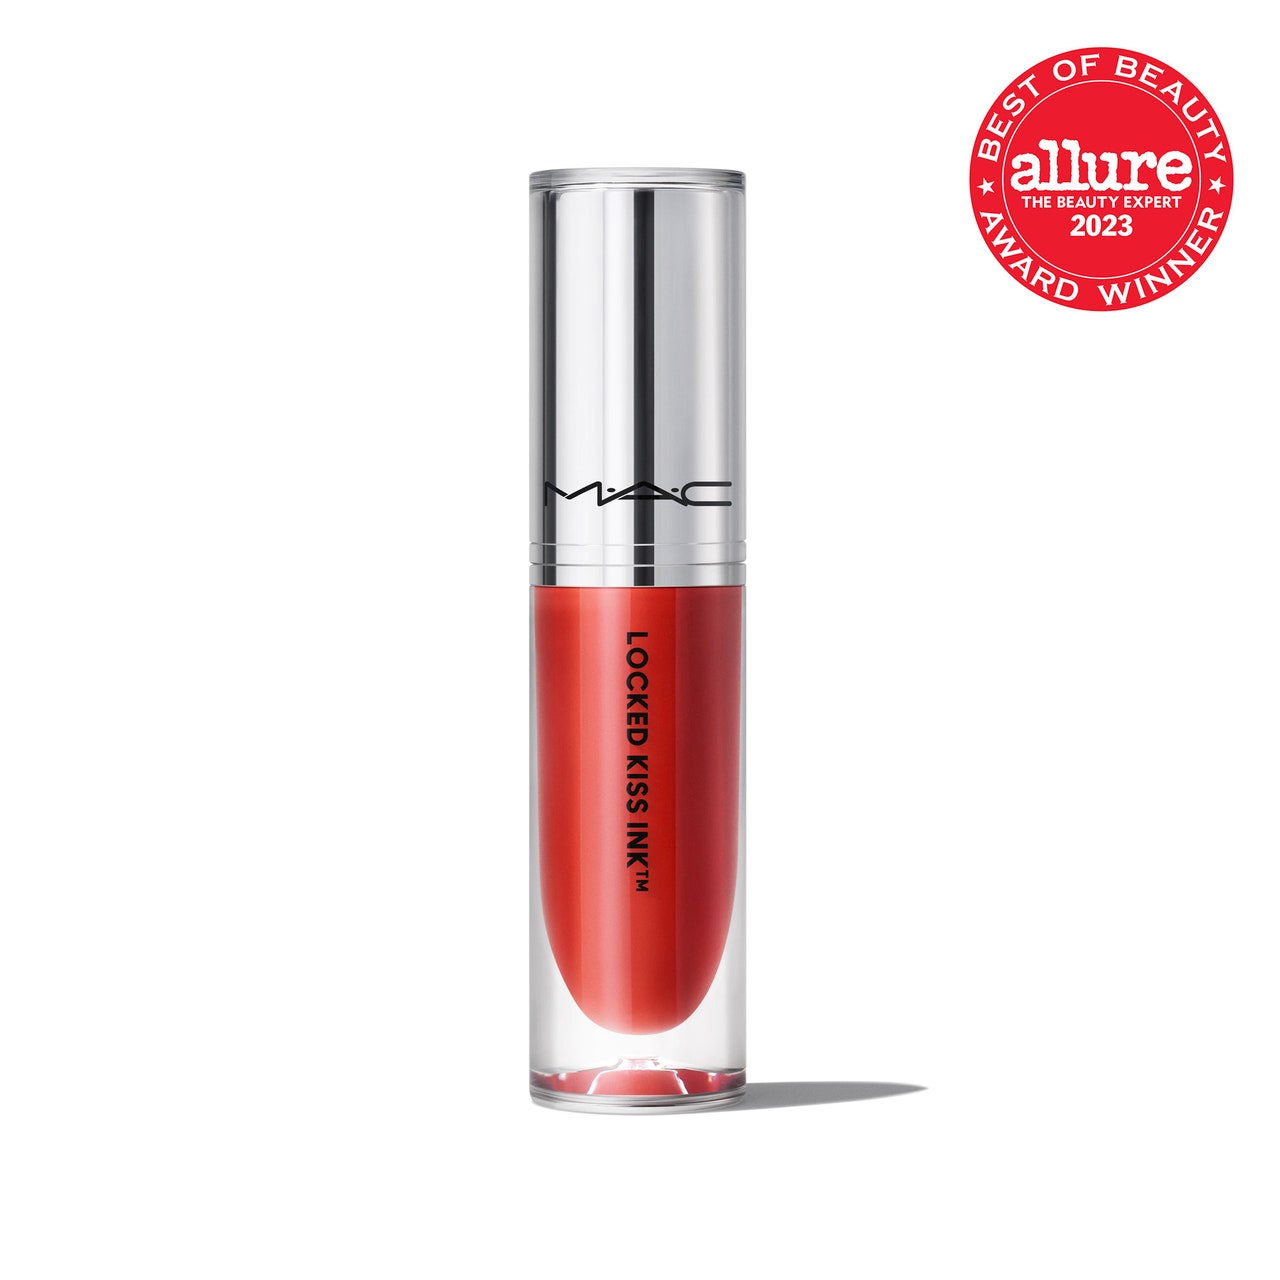 MAC Locked Kiss Ink Liquid Lipcolour, transparentes Fläschchen mit rotem flüssigem Lippenstift mit silberner Kappe auf weißem Hintergrund mit rotem Allure BoB-Siegel in der oberen rechten Ecke